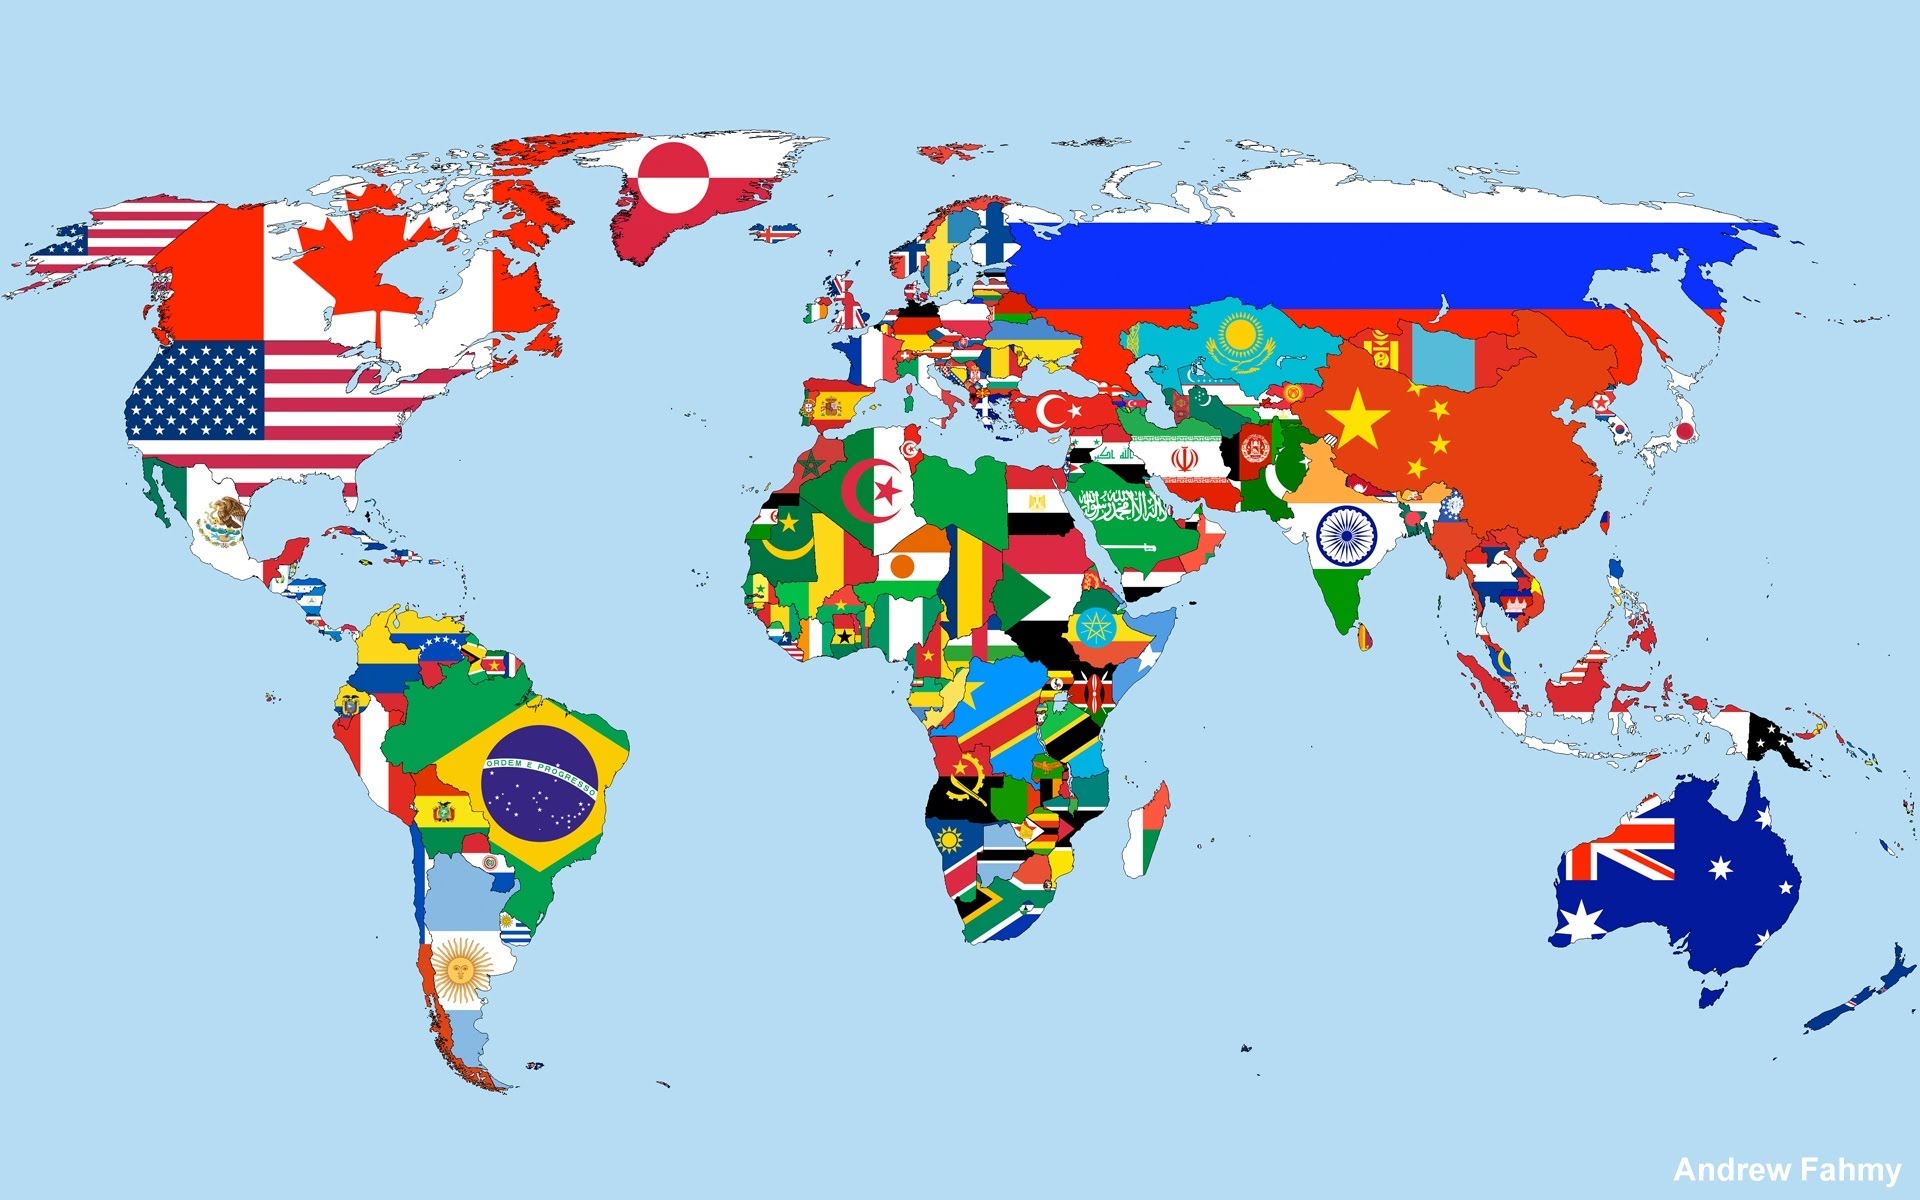 5740 1 خريطة العالم صماء - الصور الدقيقة لخريطة العالم الصماء اخلاص سيف